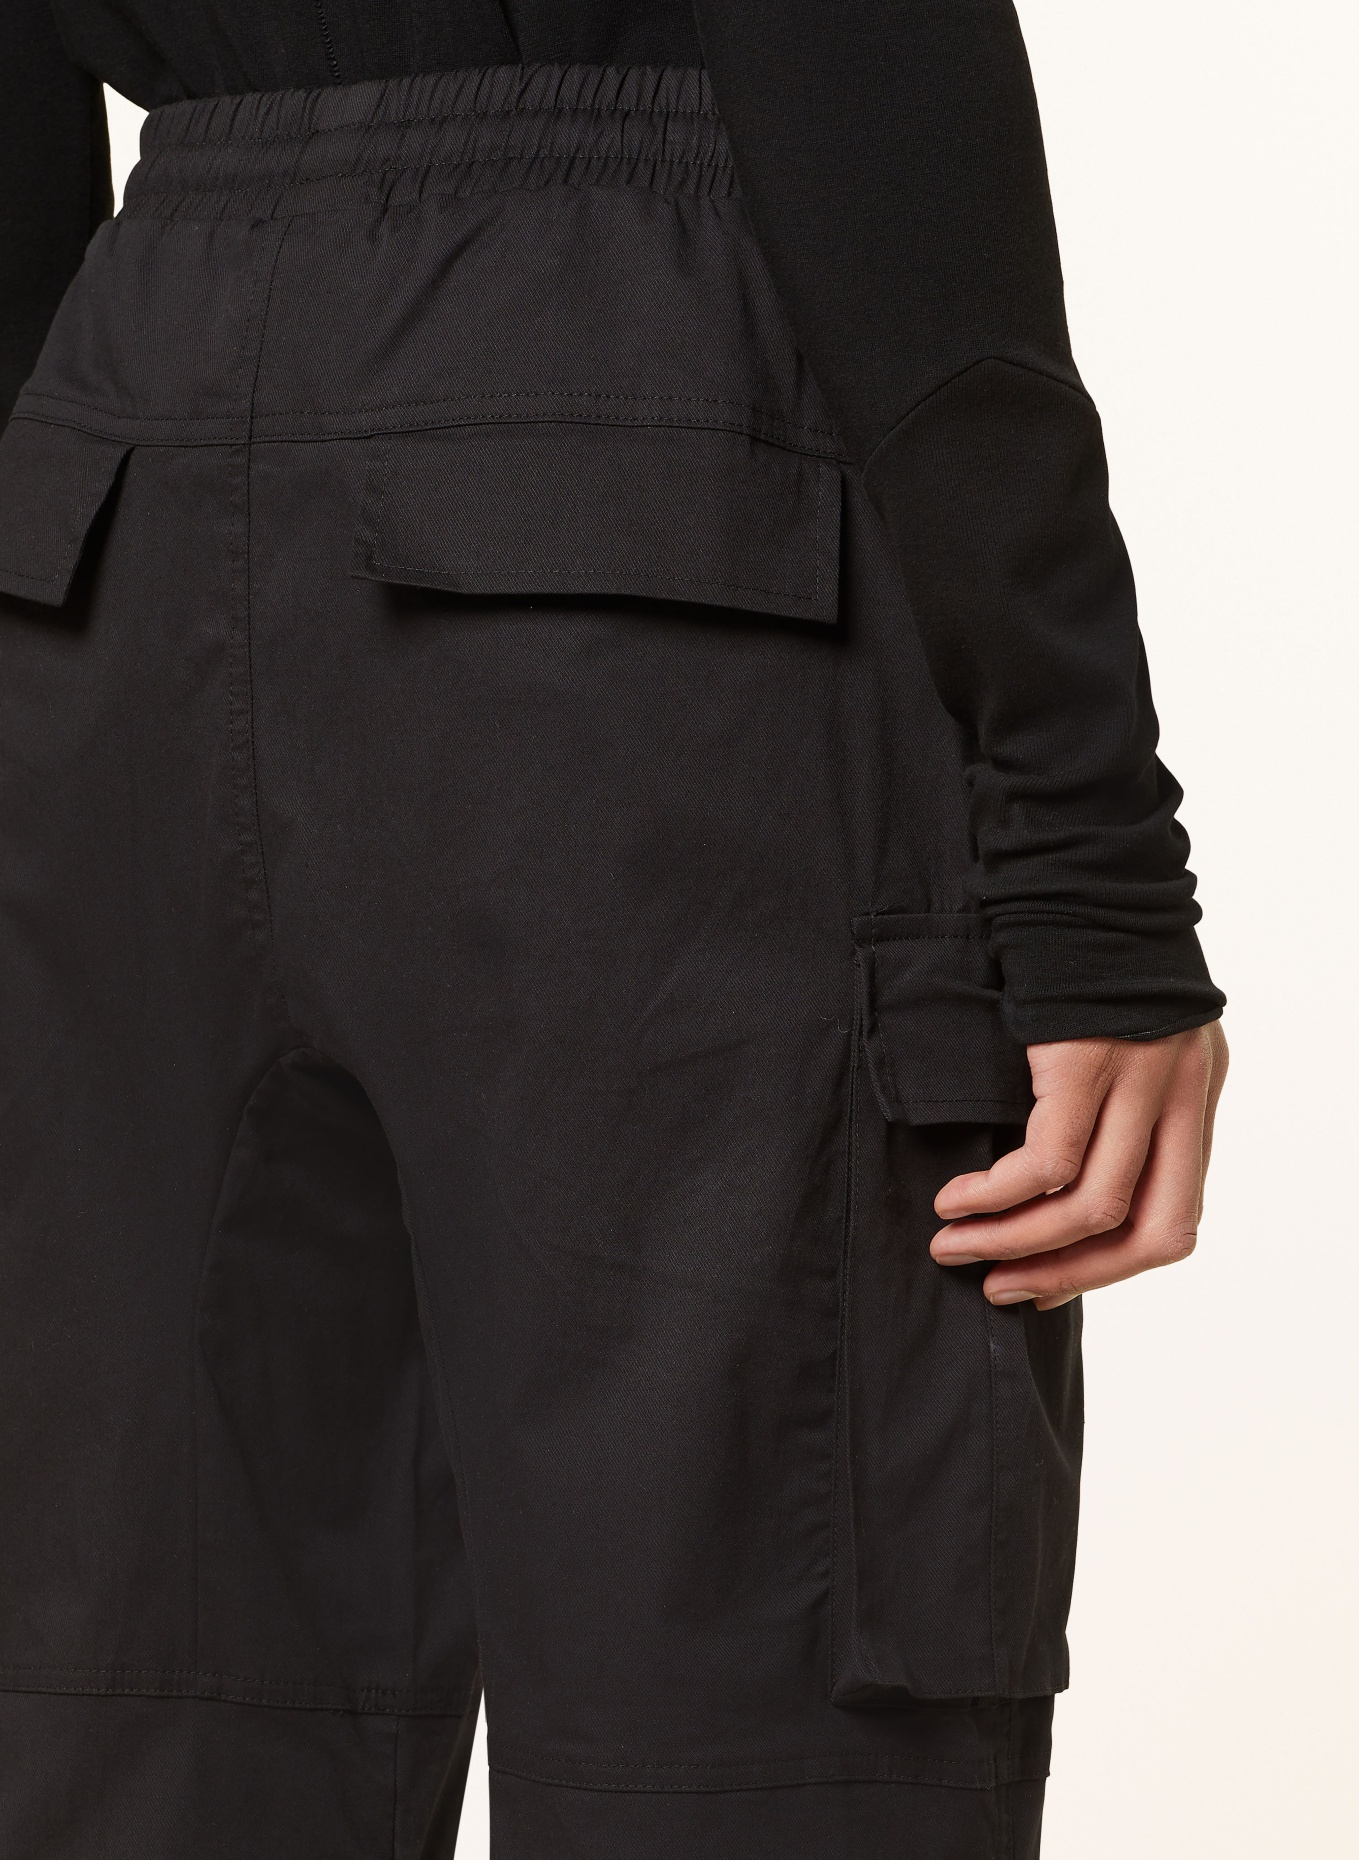 thom/krom Cargo pants regular fit, Color: BLACK (Image 6)